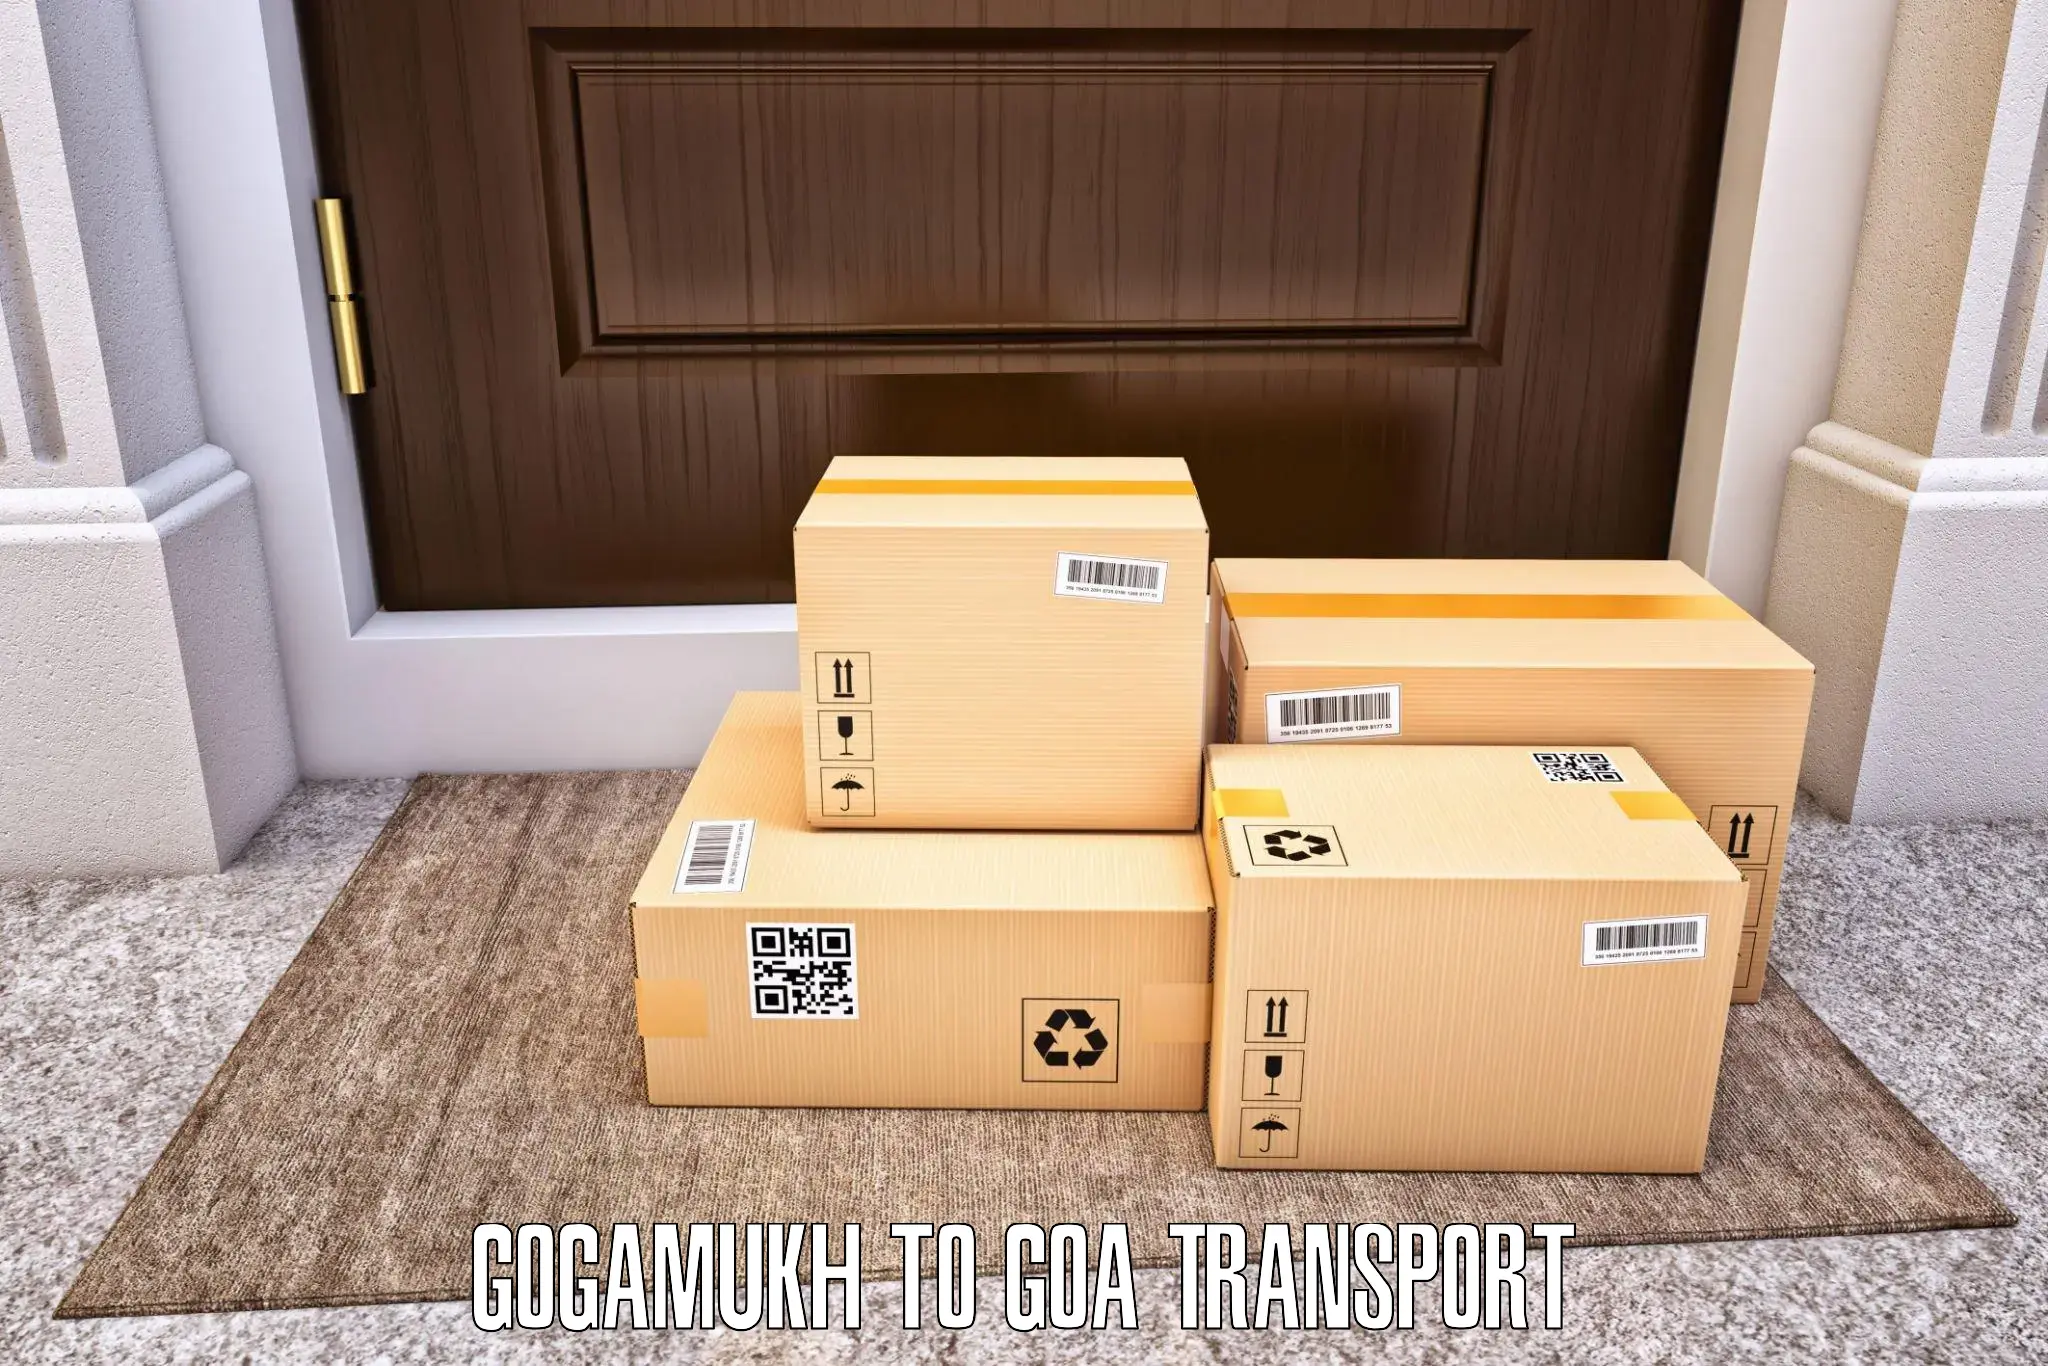 Cargo transportation services Gogamukh to South Goa